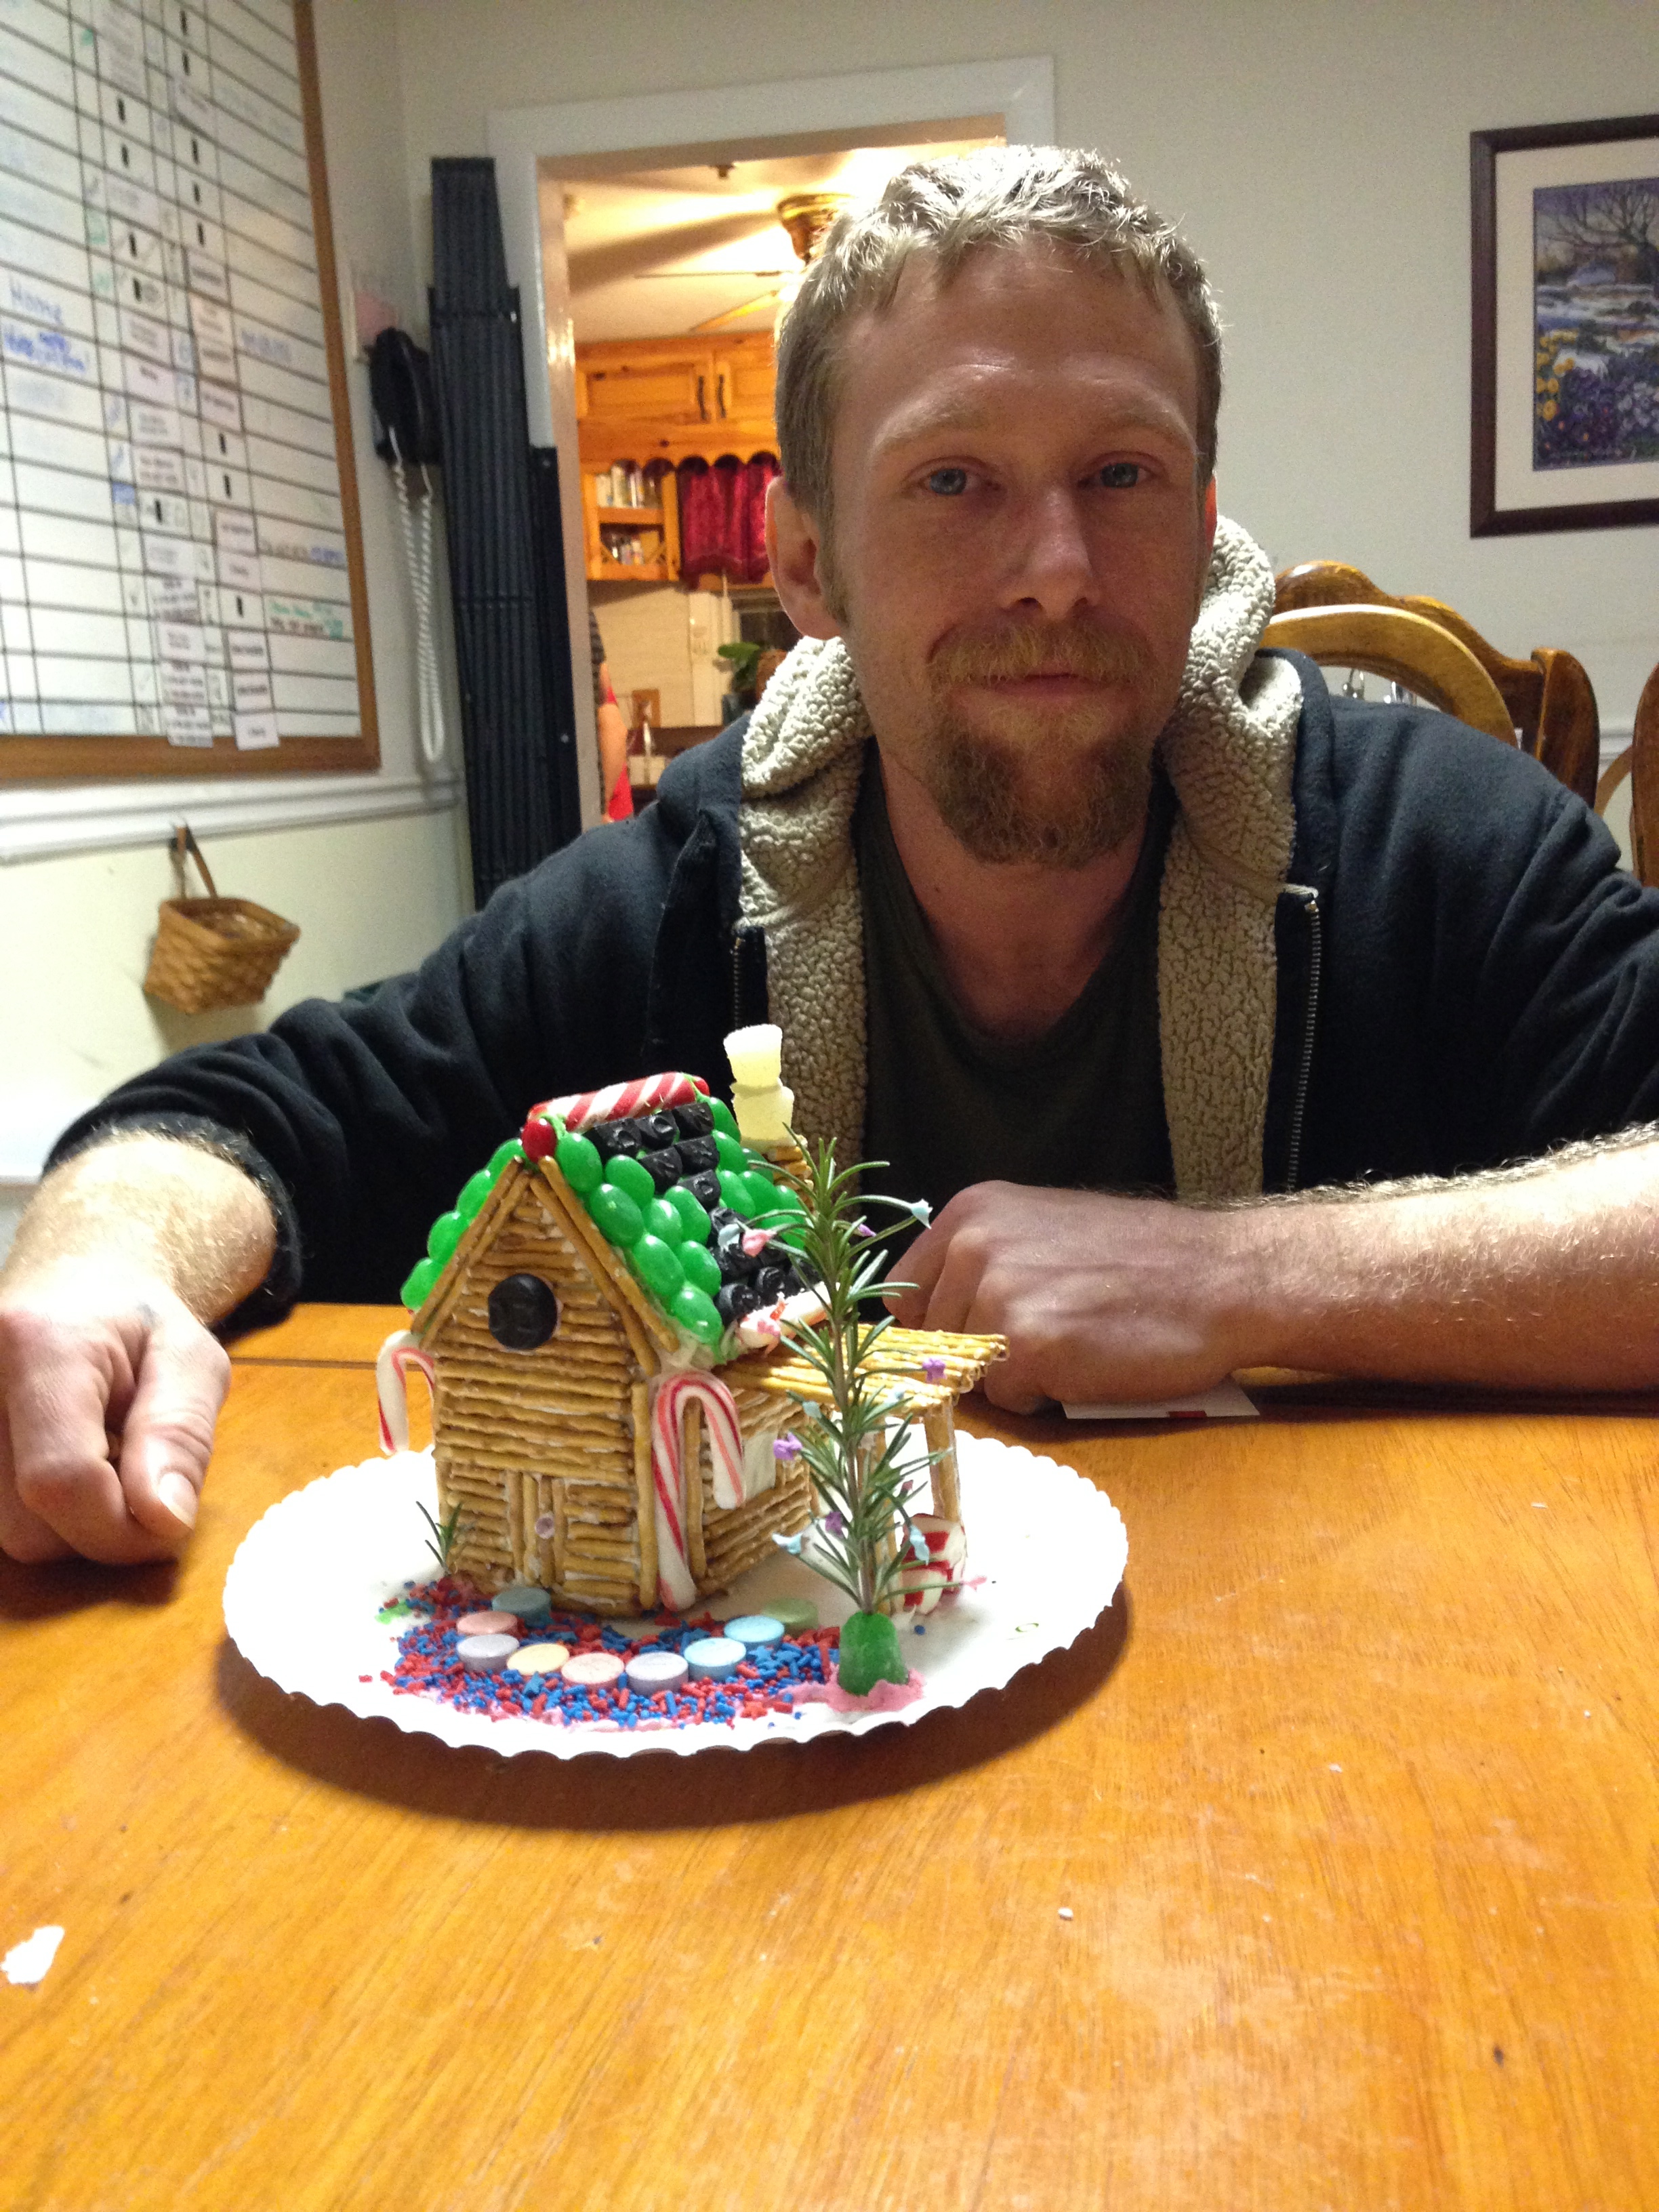 Winner of the 2013 Gingerbread Contest: Good job Matt!